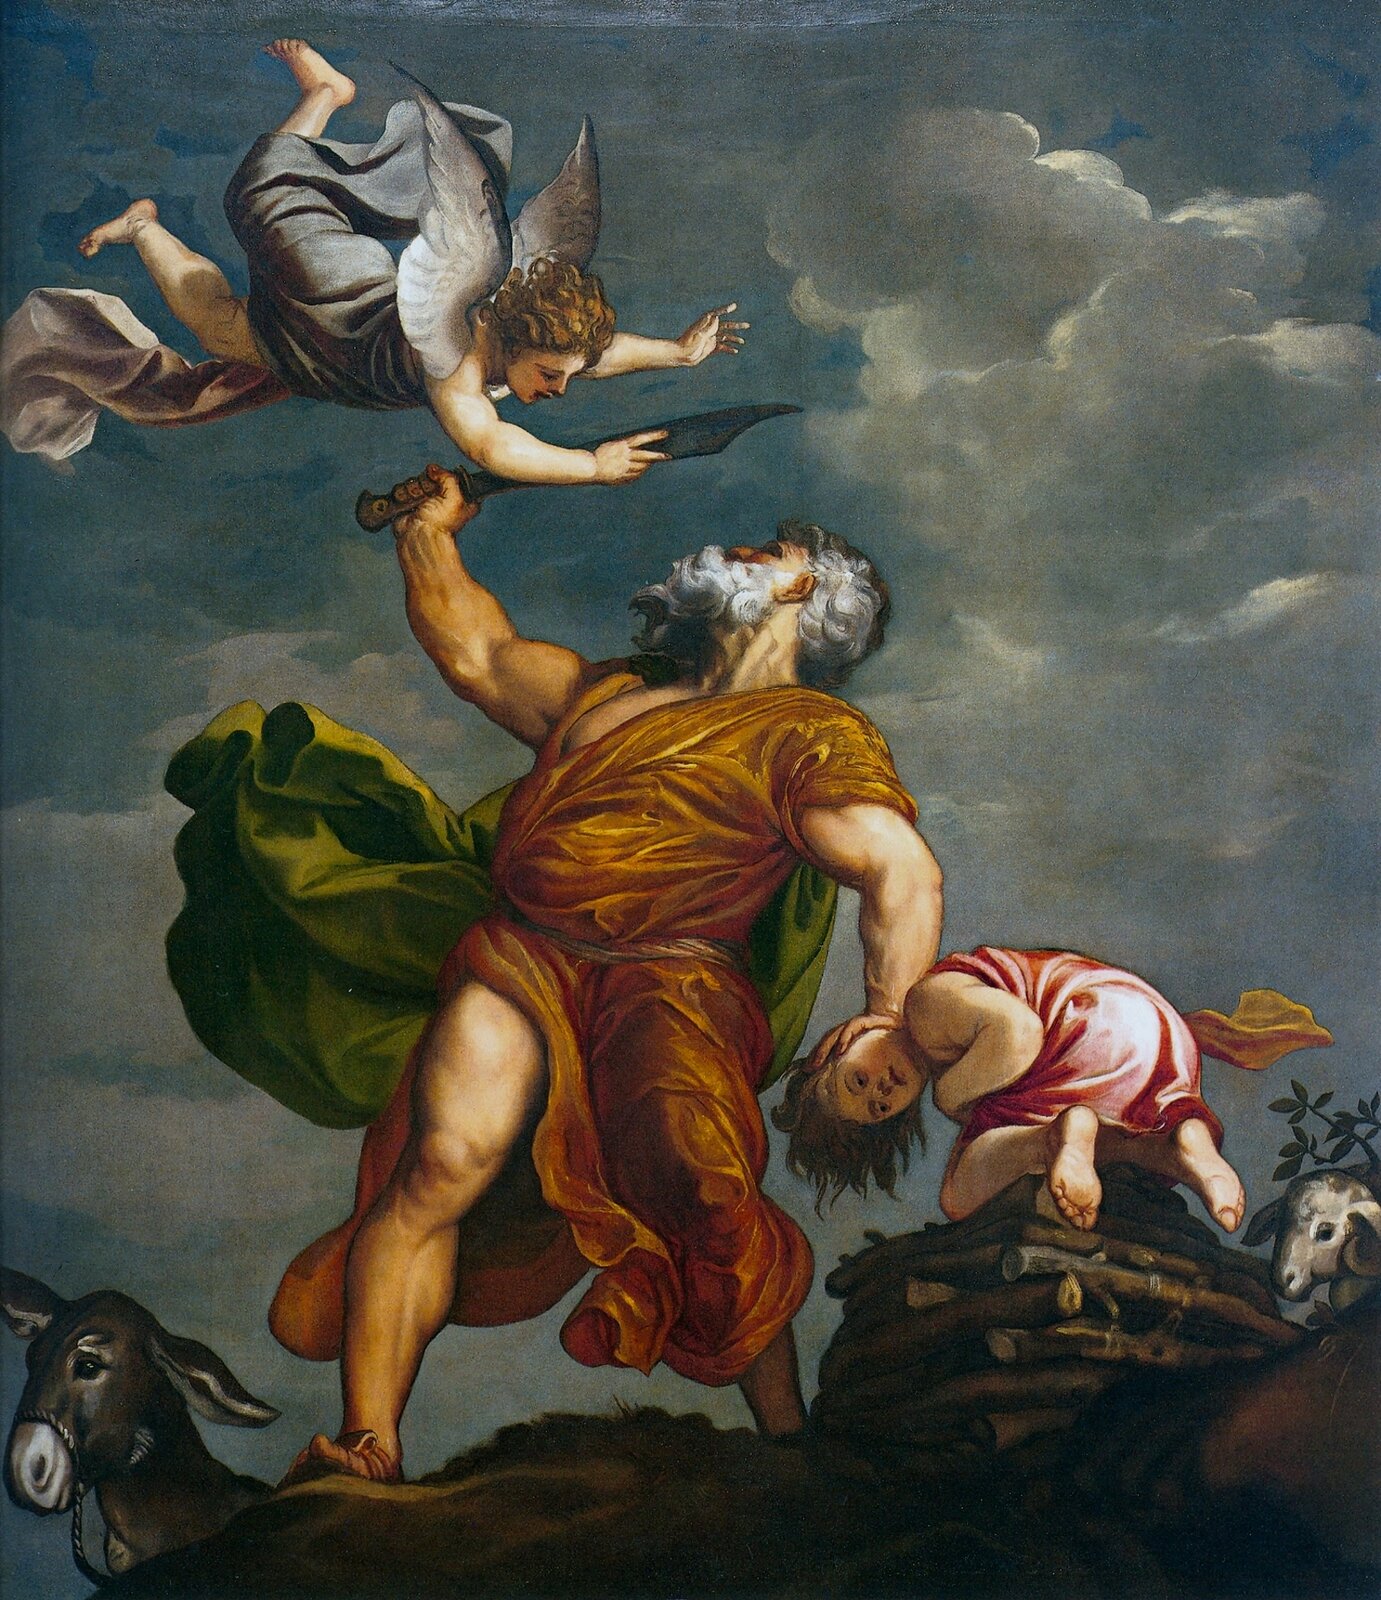 Ilustracja przedstawia obraz Tycjana „Ofiara Izaaka”. Ukazuje Abrahama w żółto-zielonej szacie z mieczem w dłoni, odwróconego w górę, w stronę anioła, który ręką chwycił za miecz. Lewą dłonią trzyma głowę małego Izaaka klęczącego na podwyższeniu z gałęzi. Po lewej stronie zza wzgórza wychyla się głowa osła, a po prawej baranka. Tłem jest ciemne, zachmurzone niebo.